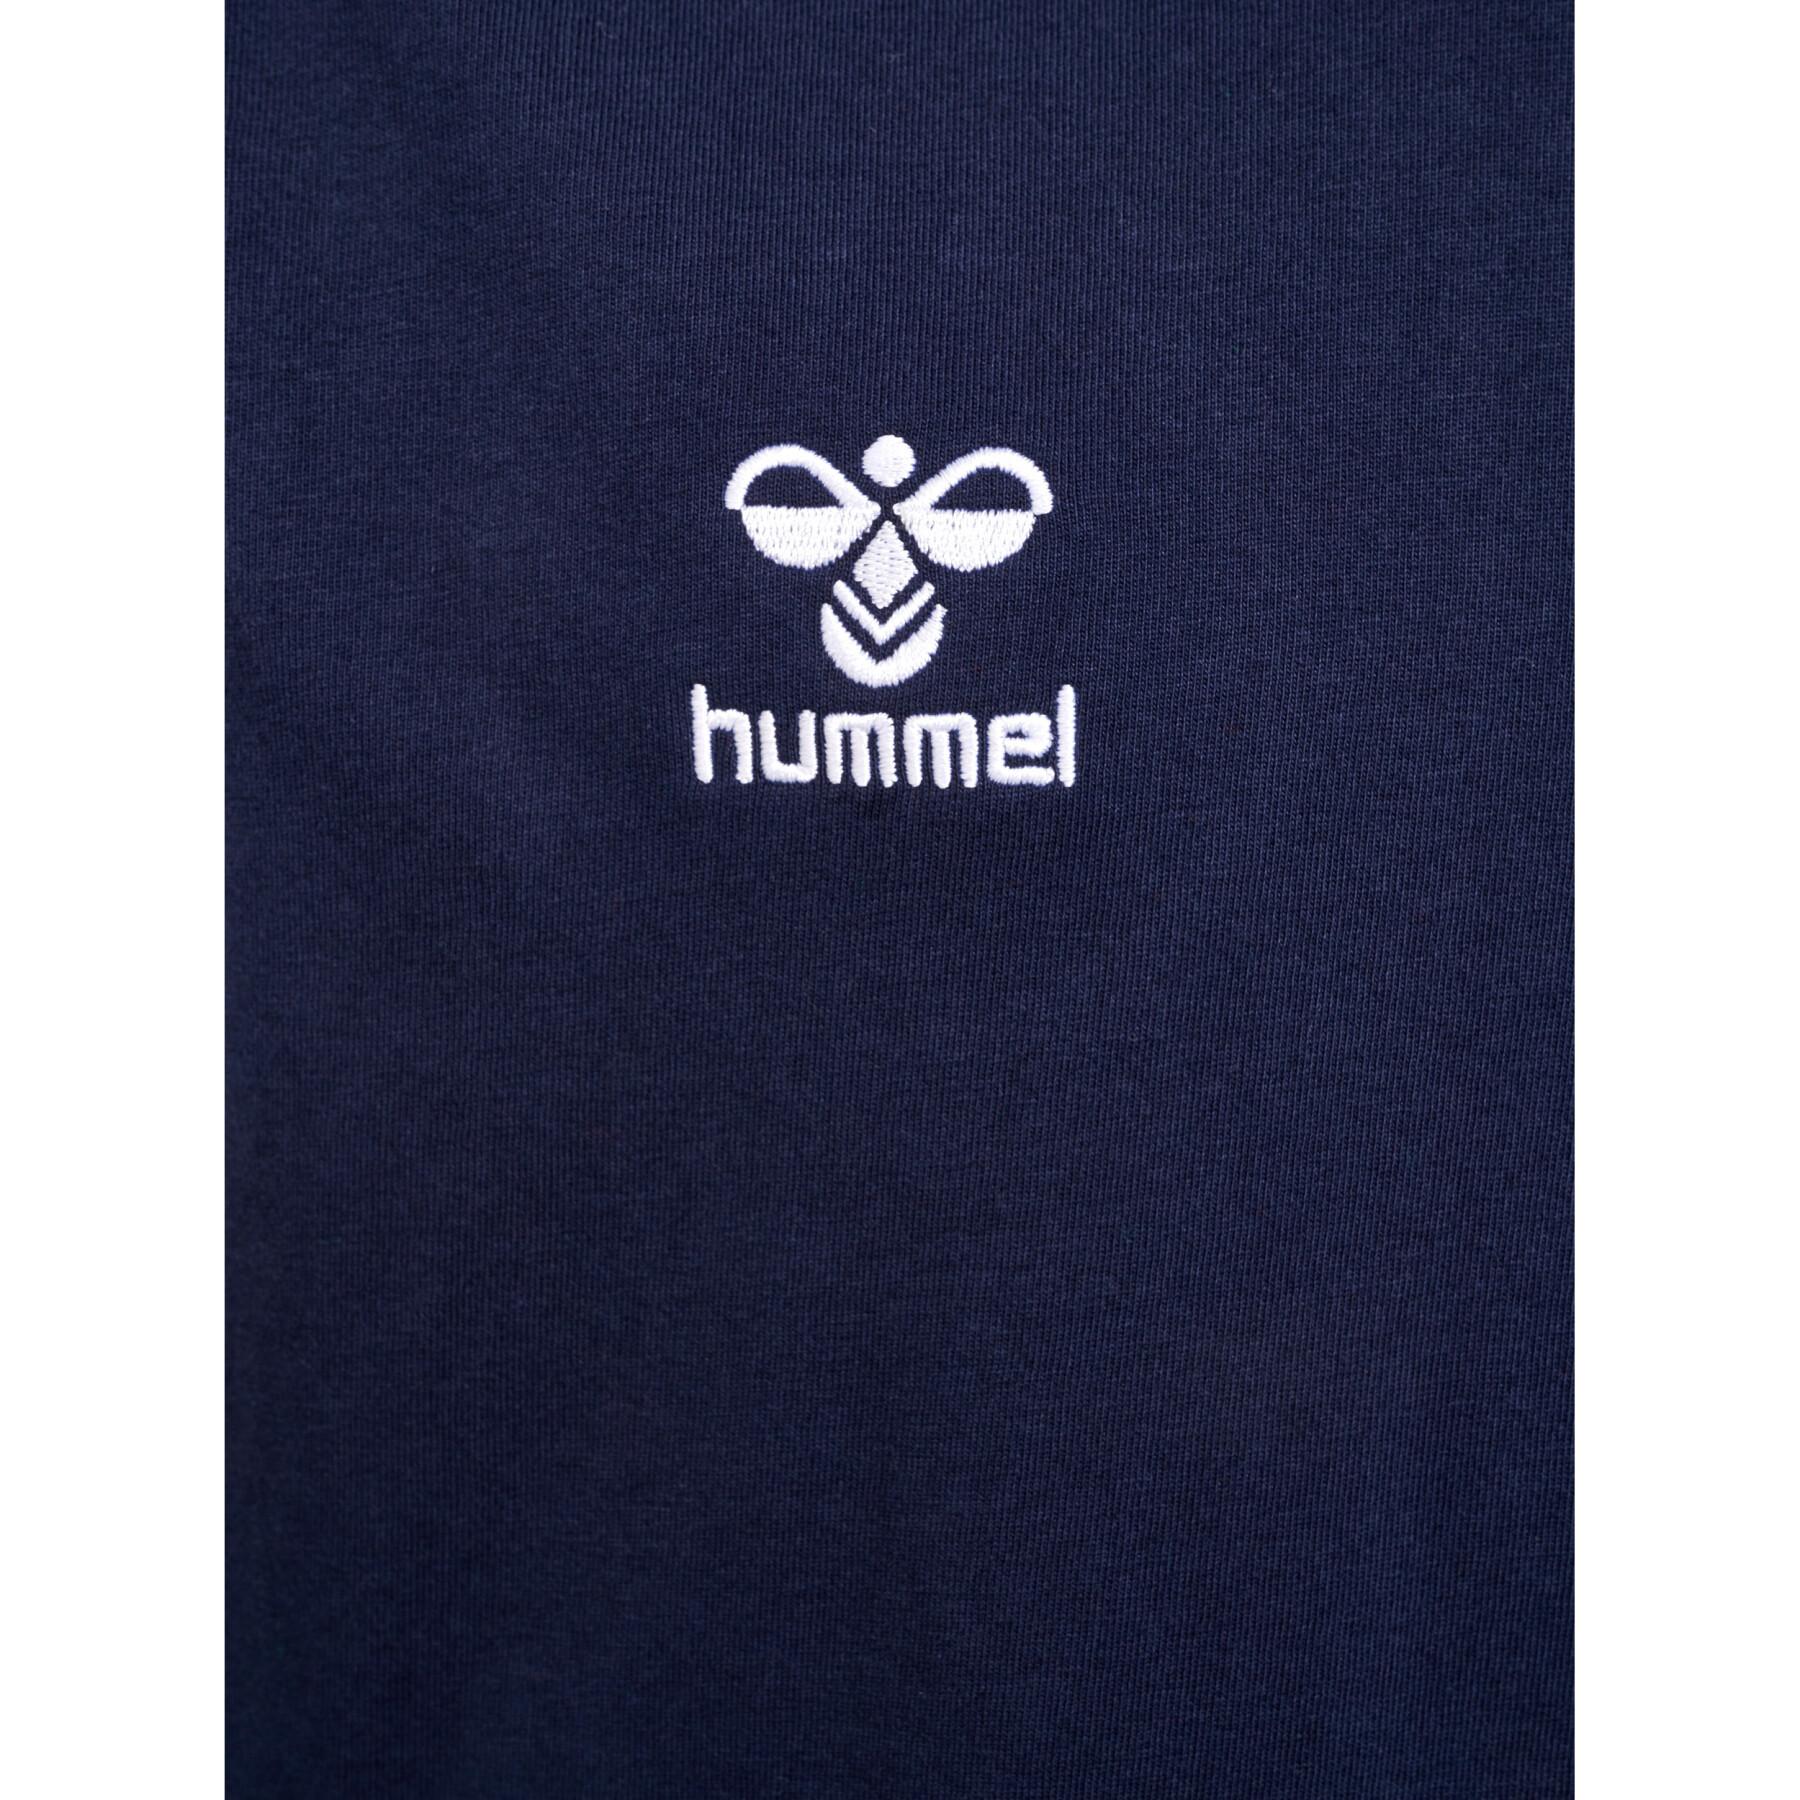 Camiseta infantil Hummel Go 2.0